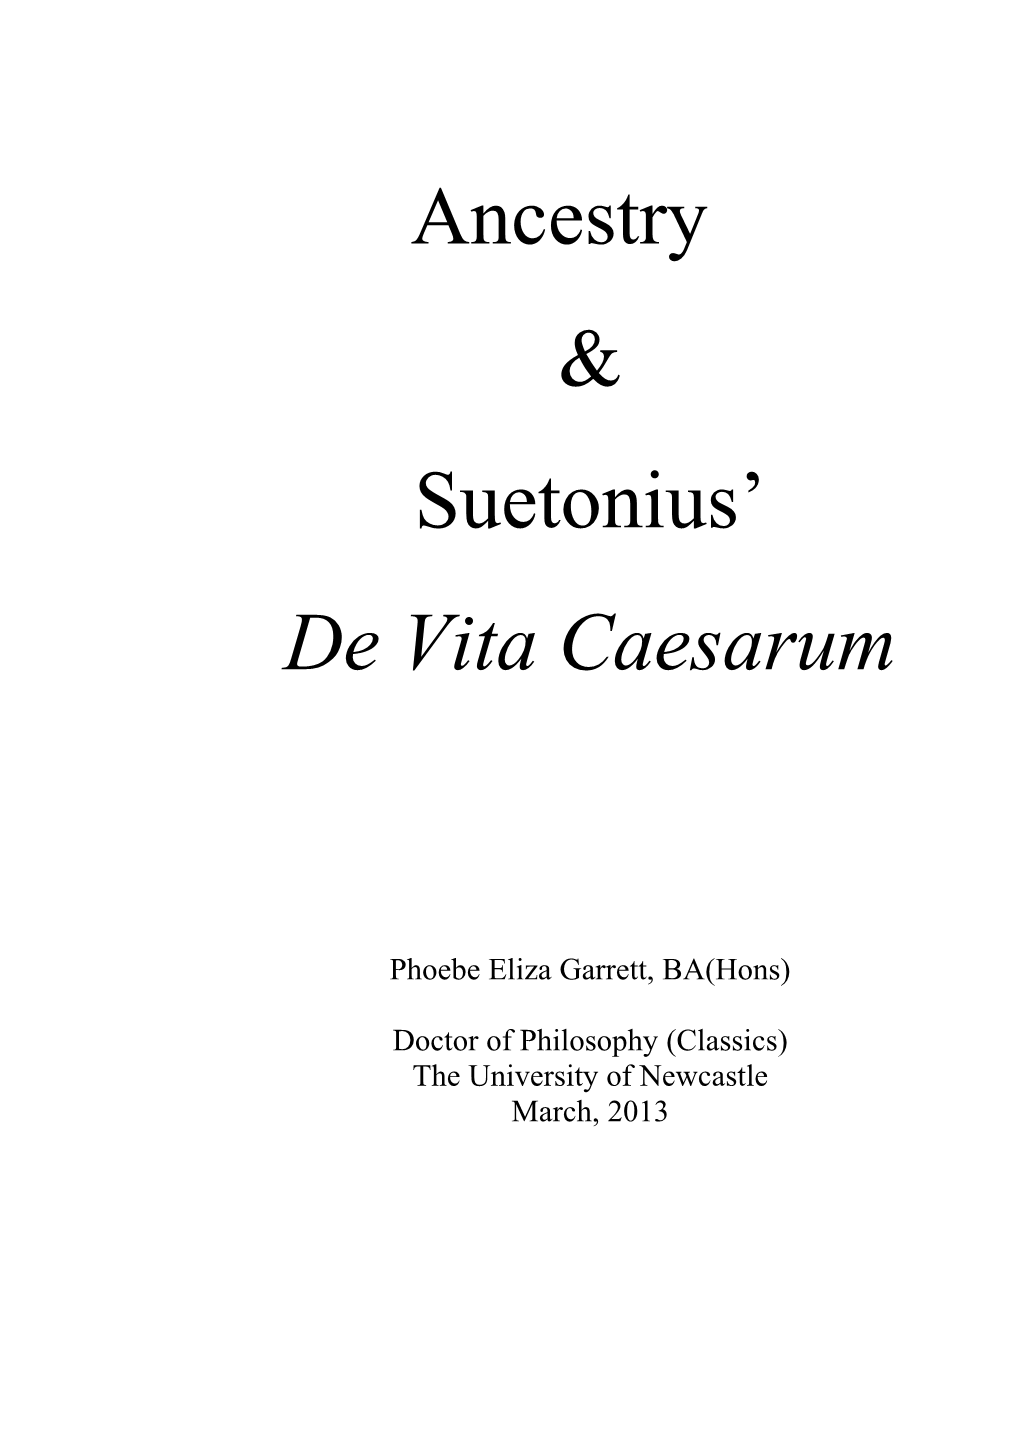 Ancestry & Suetonius' De Vita Caesarum